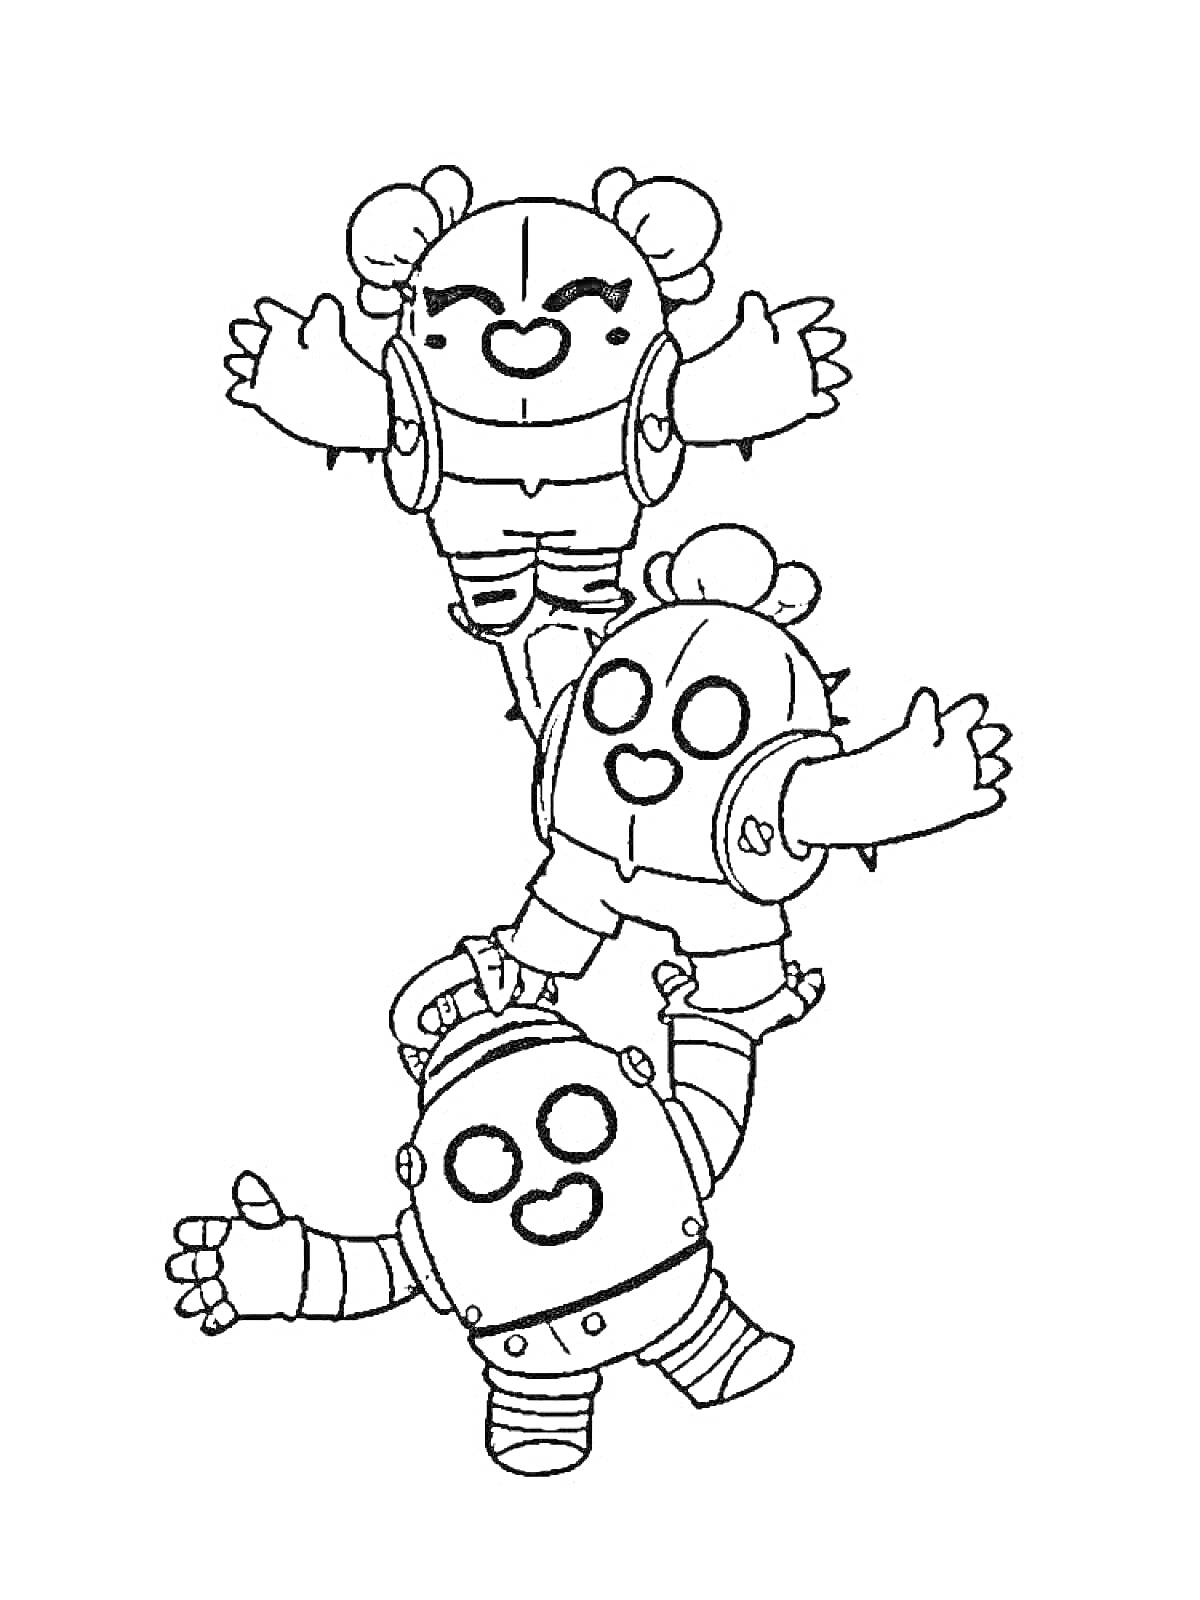 Раскраска Три Спайка из игры Бравл Старс, стоящие друг на друге и приветствующие